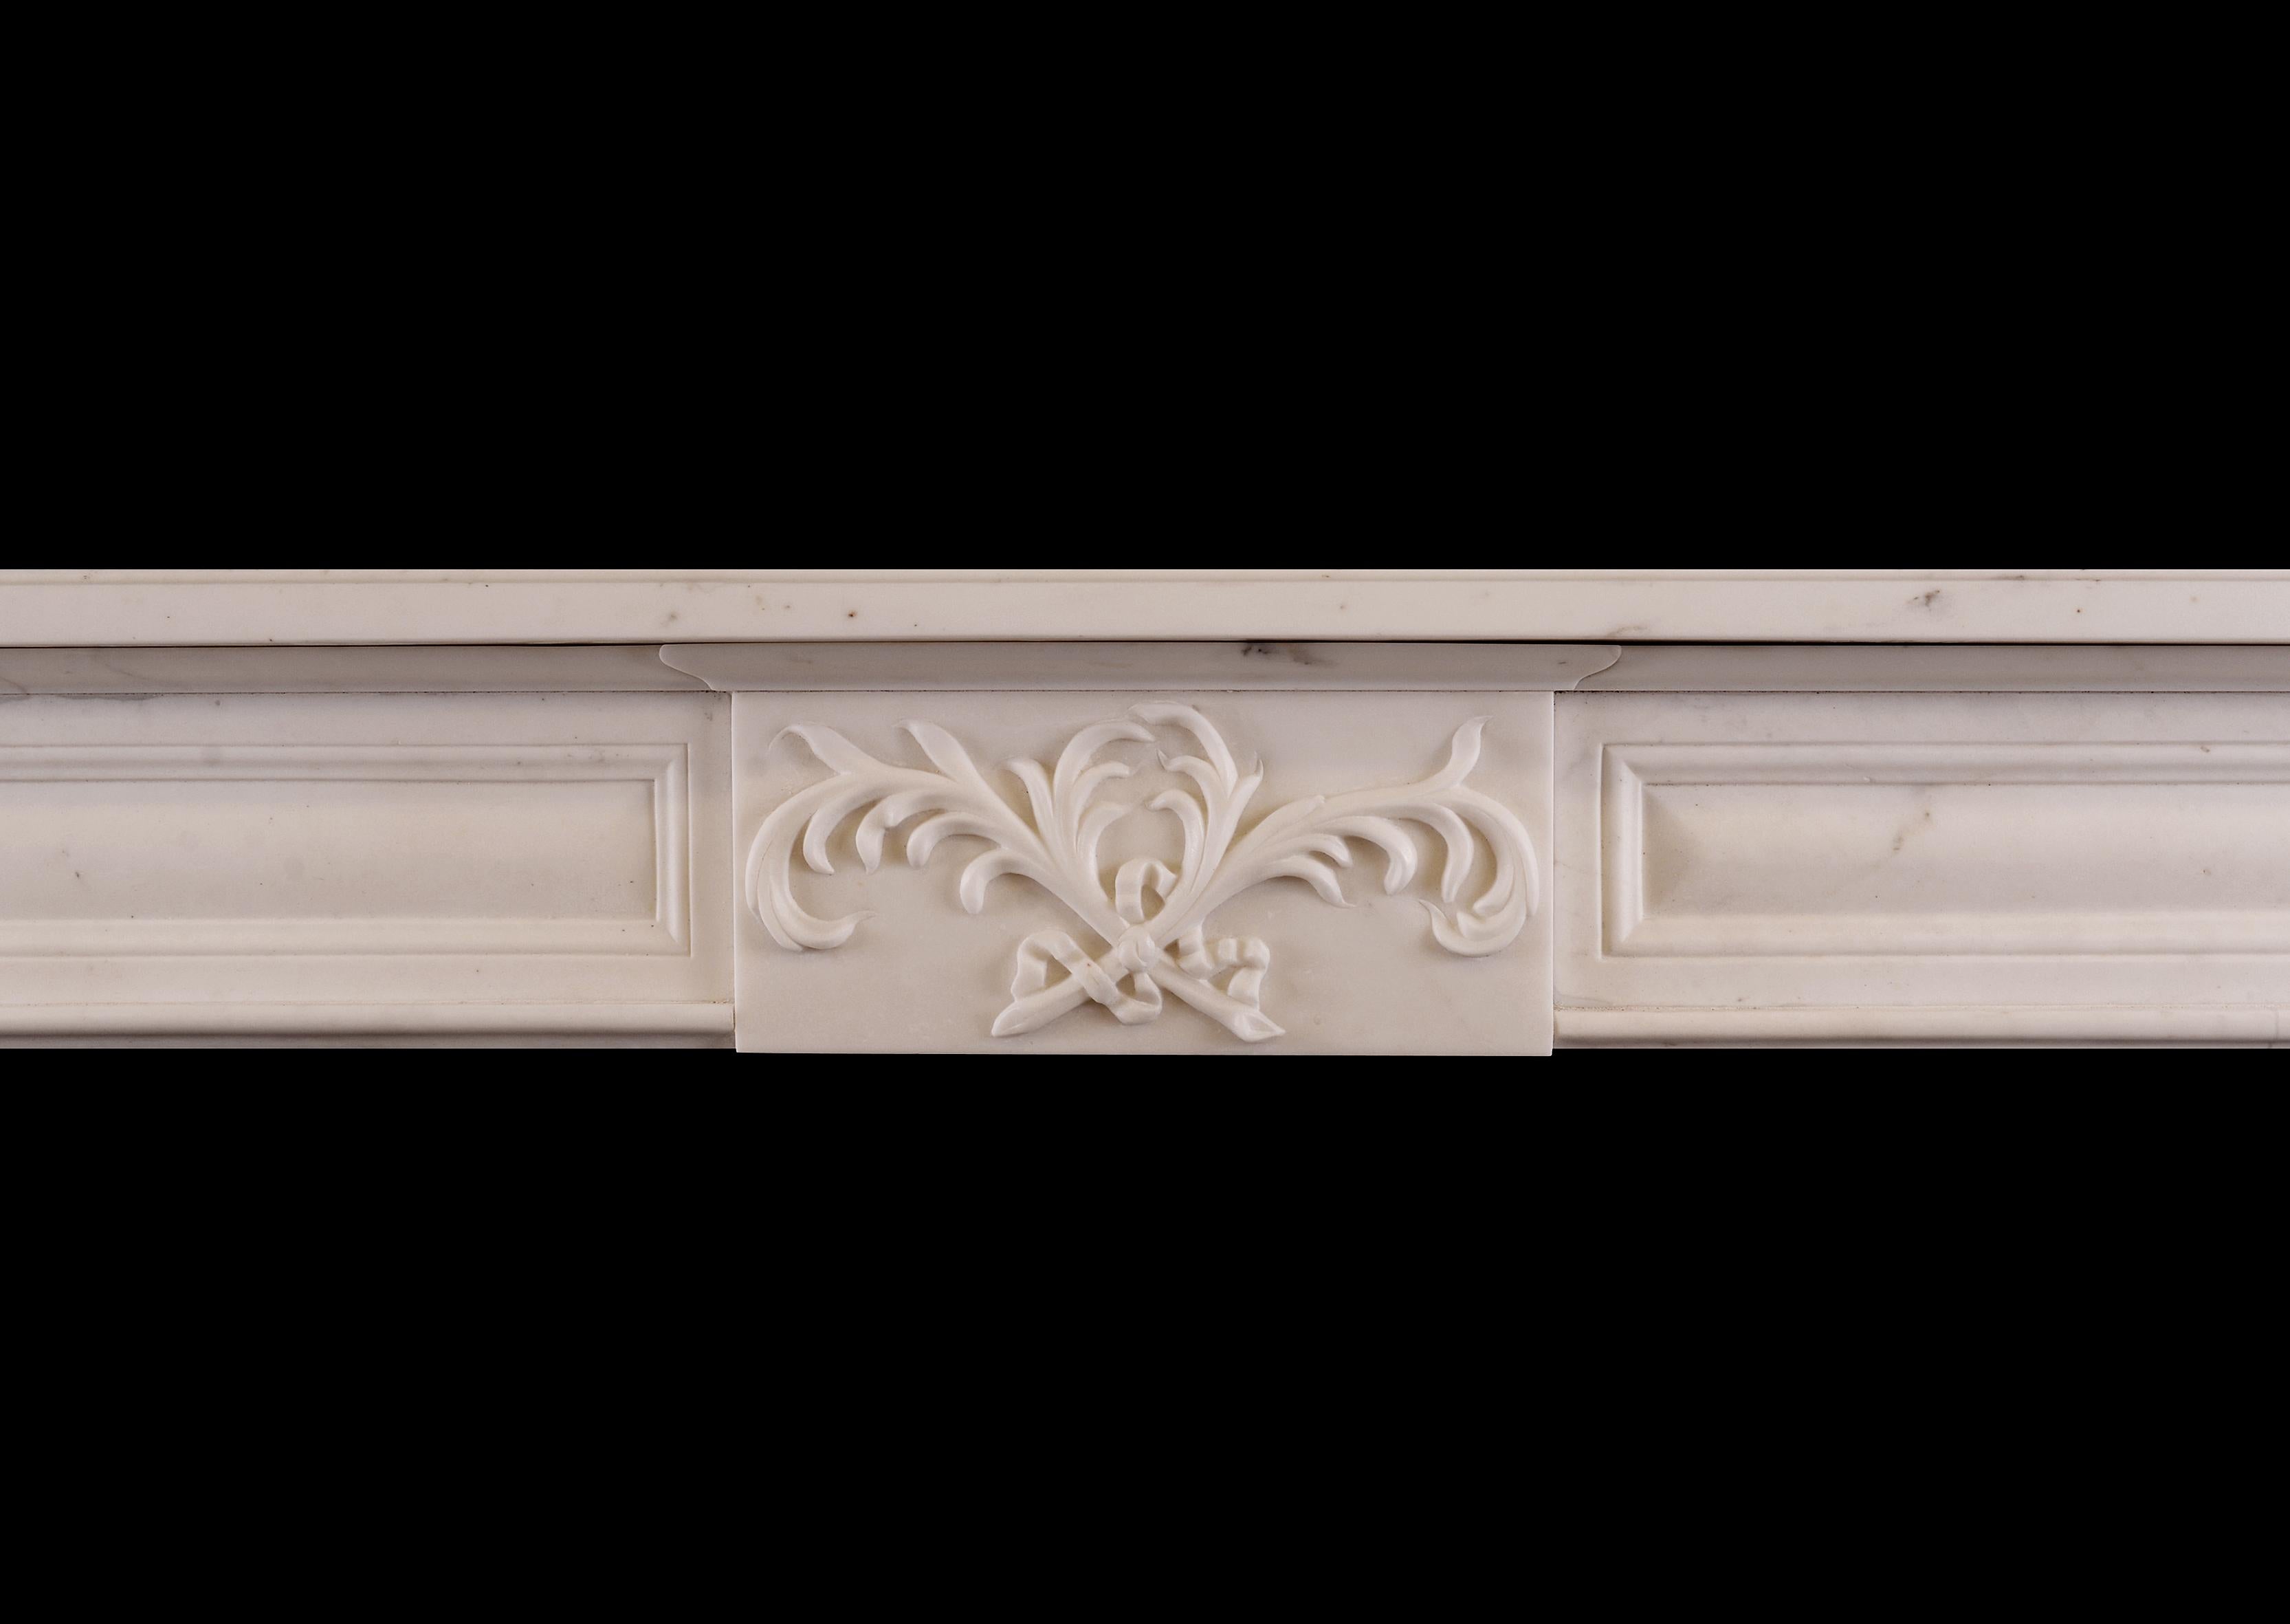 Ein statuarischer Kamin aus weißem Marmor im späten Regency-Stil. Die getäfelten Türpfosten werden von quadratischen getäfelten Abschlüssen gekrönt. Der Fries mit zentraler Plakette mit gekreuztem Blattwerk, flankiert von passenden Tafeln. Einfaches